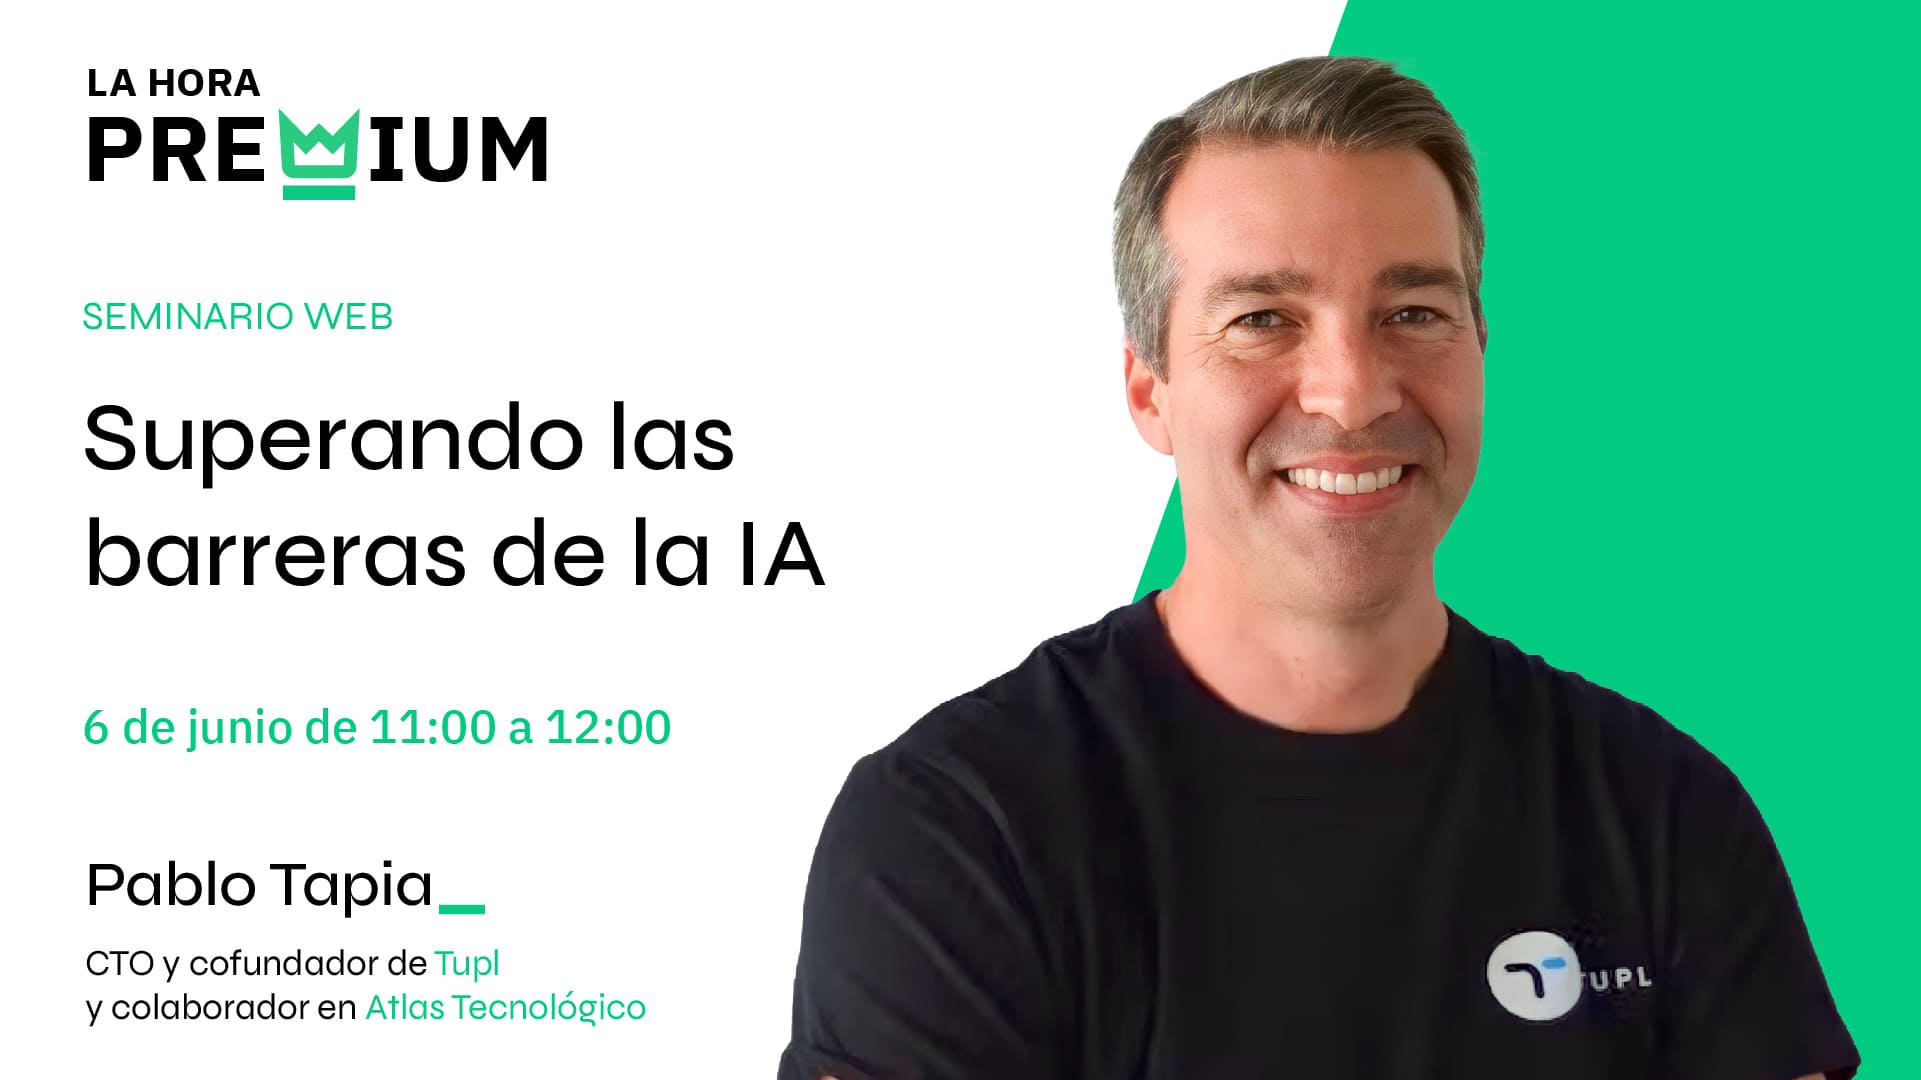 Pablo Tapia hablará sobre las barreras a superar de la IA en la Hora Premium